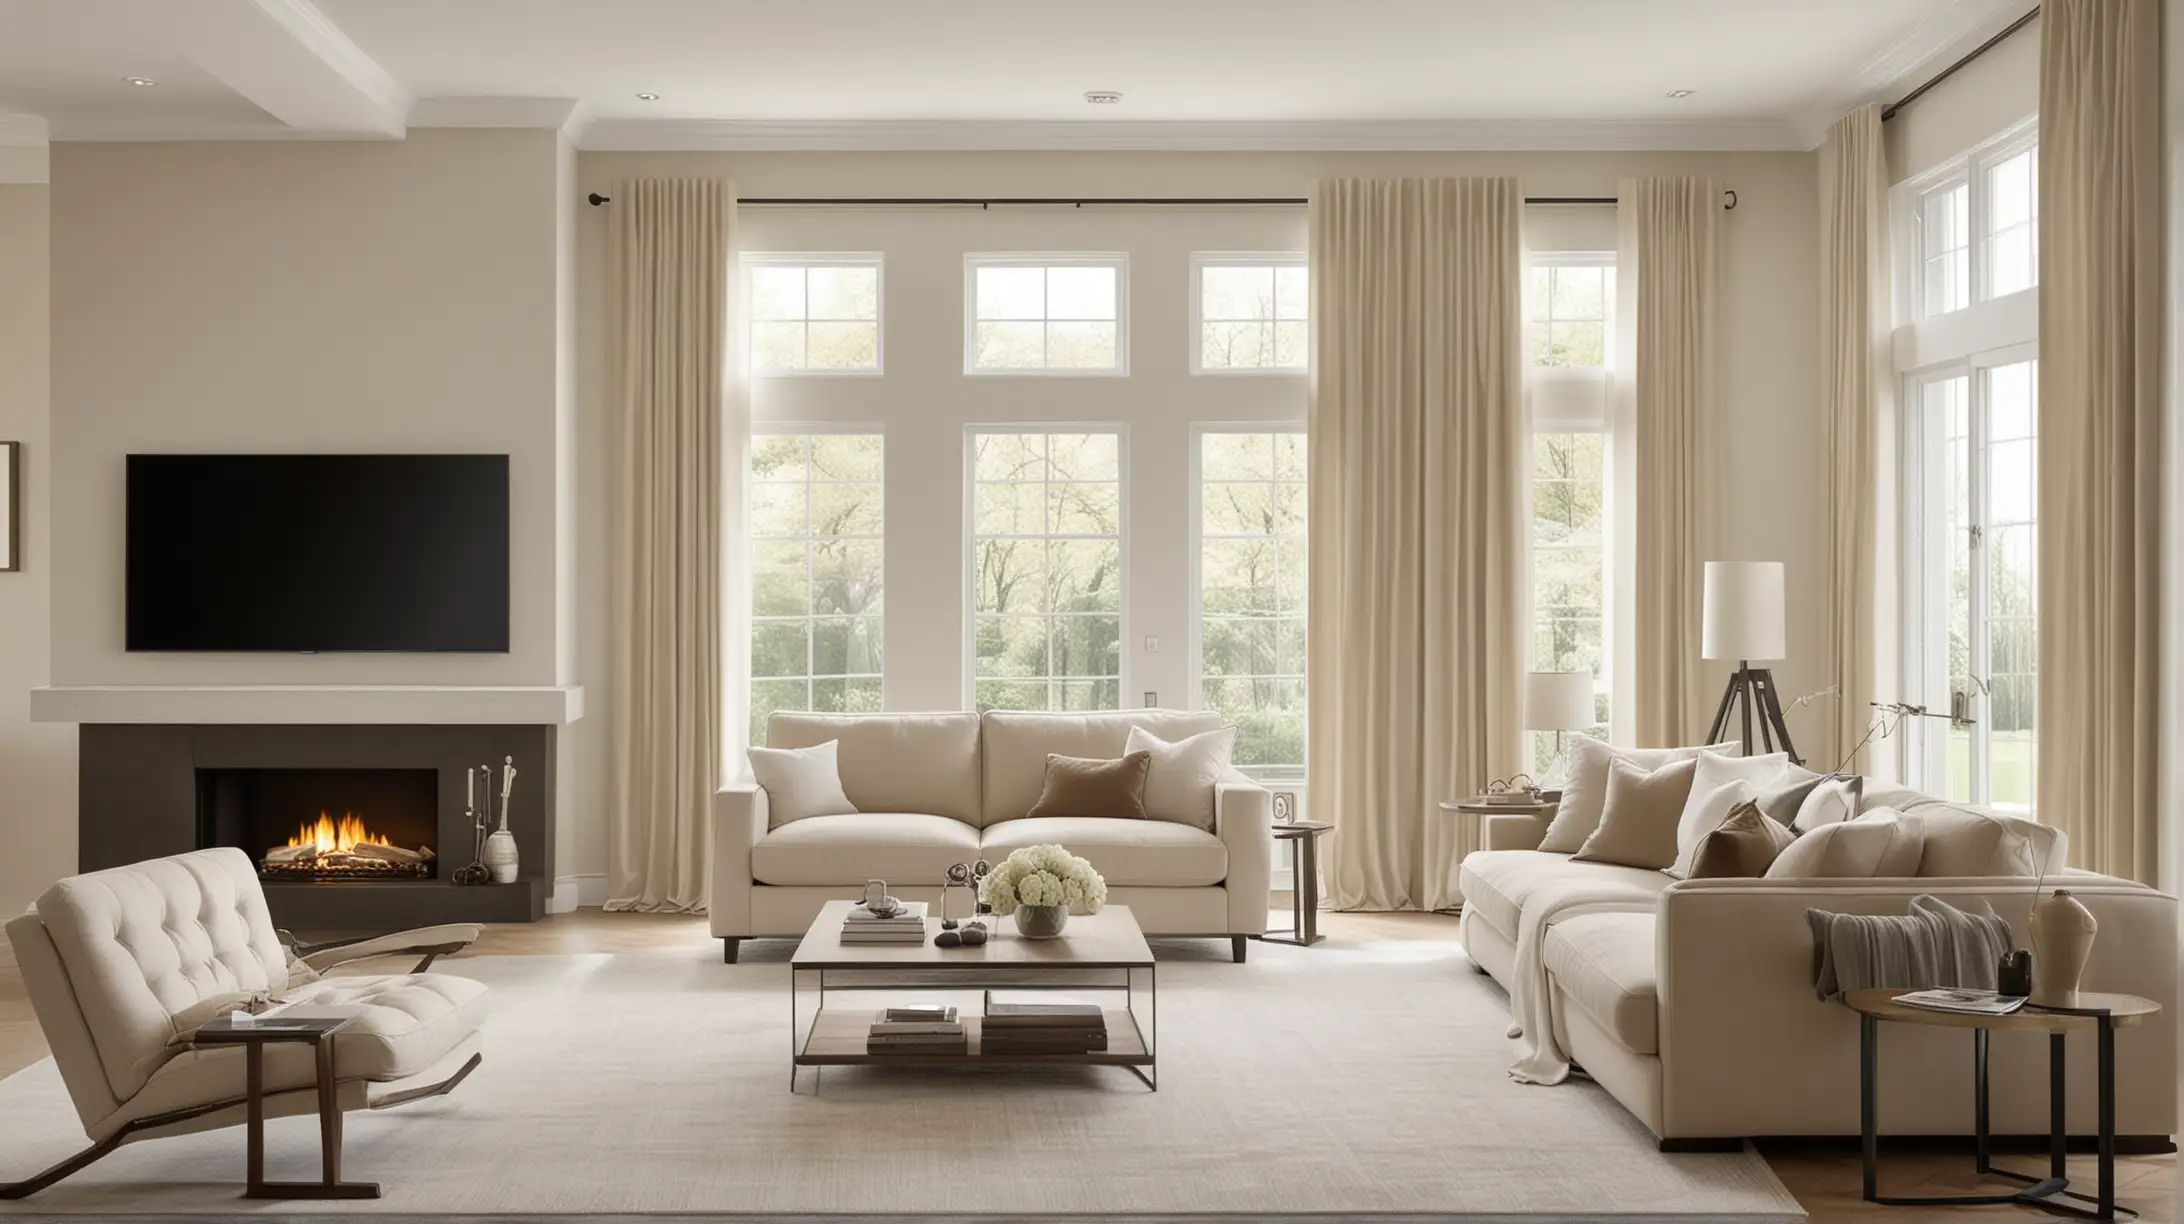 Készíts egy nagy ablakos nappalit bal oldalon legyen a kanapé és fotel, szemben a TV szekrény, bézs, törtfehér és drapp színekben. Modern, világos és elegáns legyen.